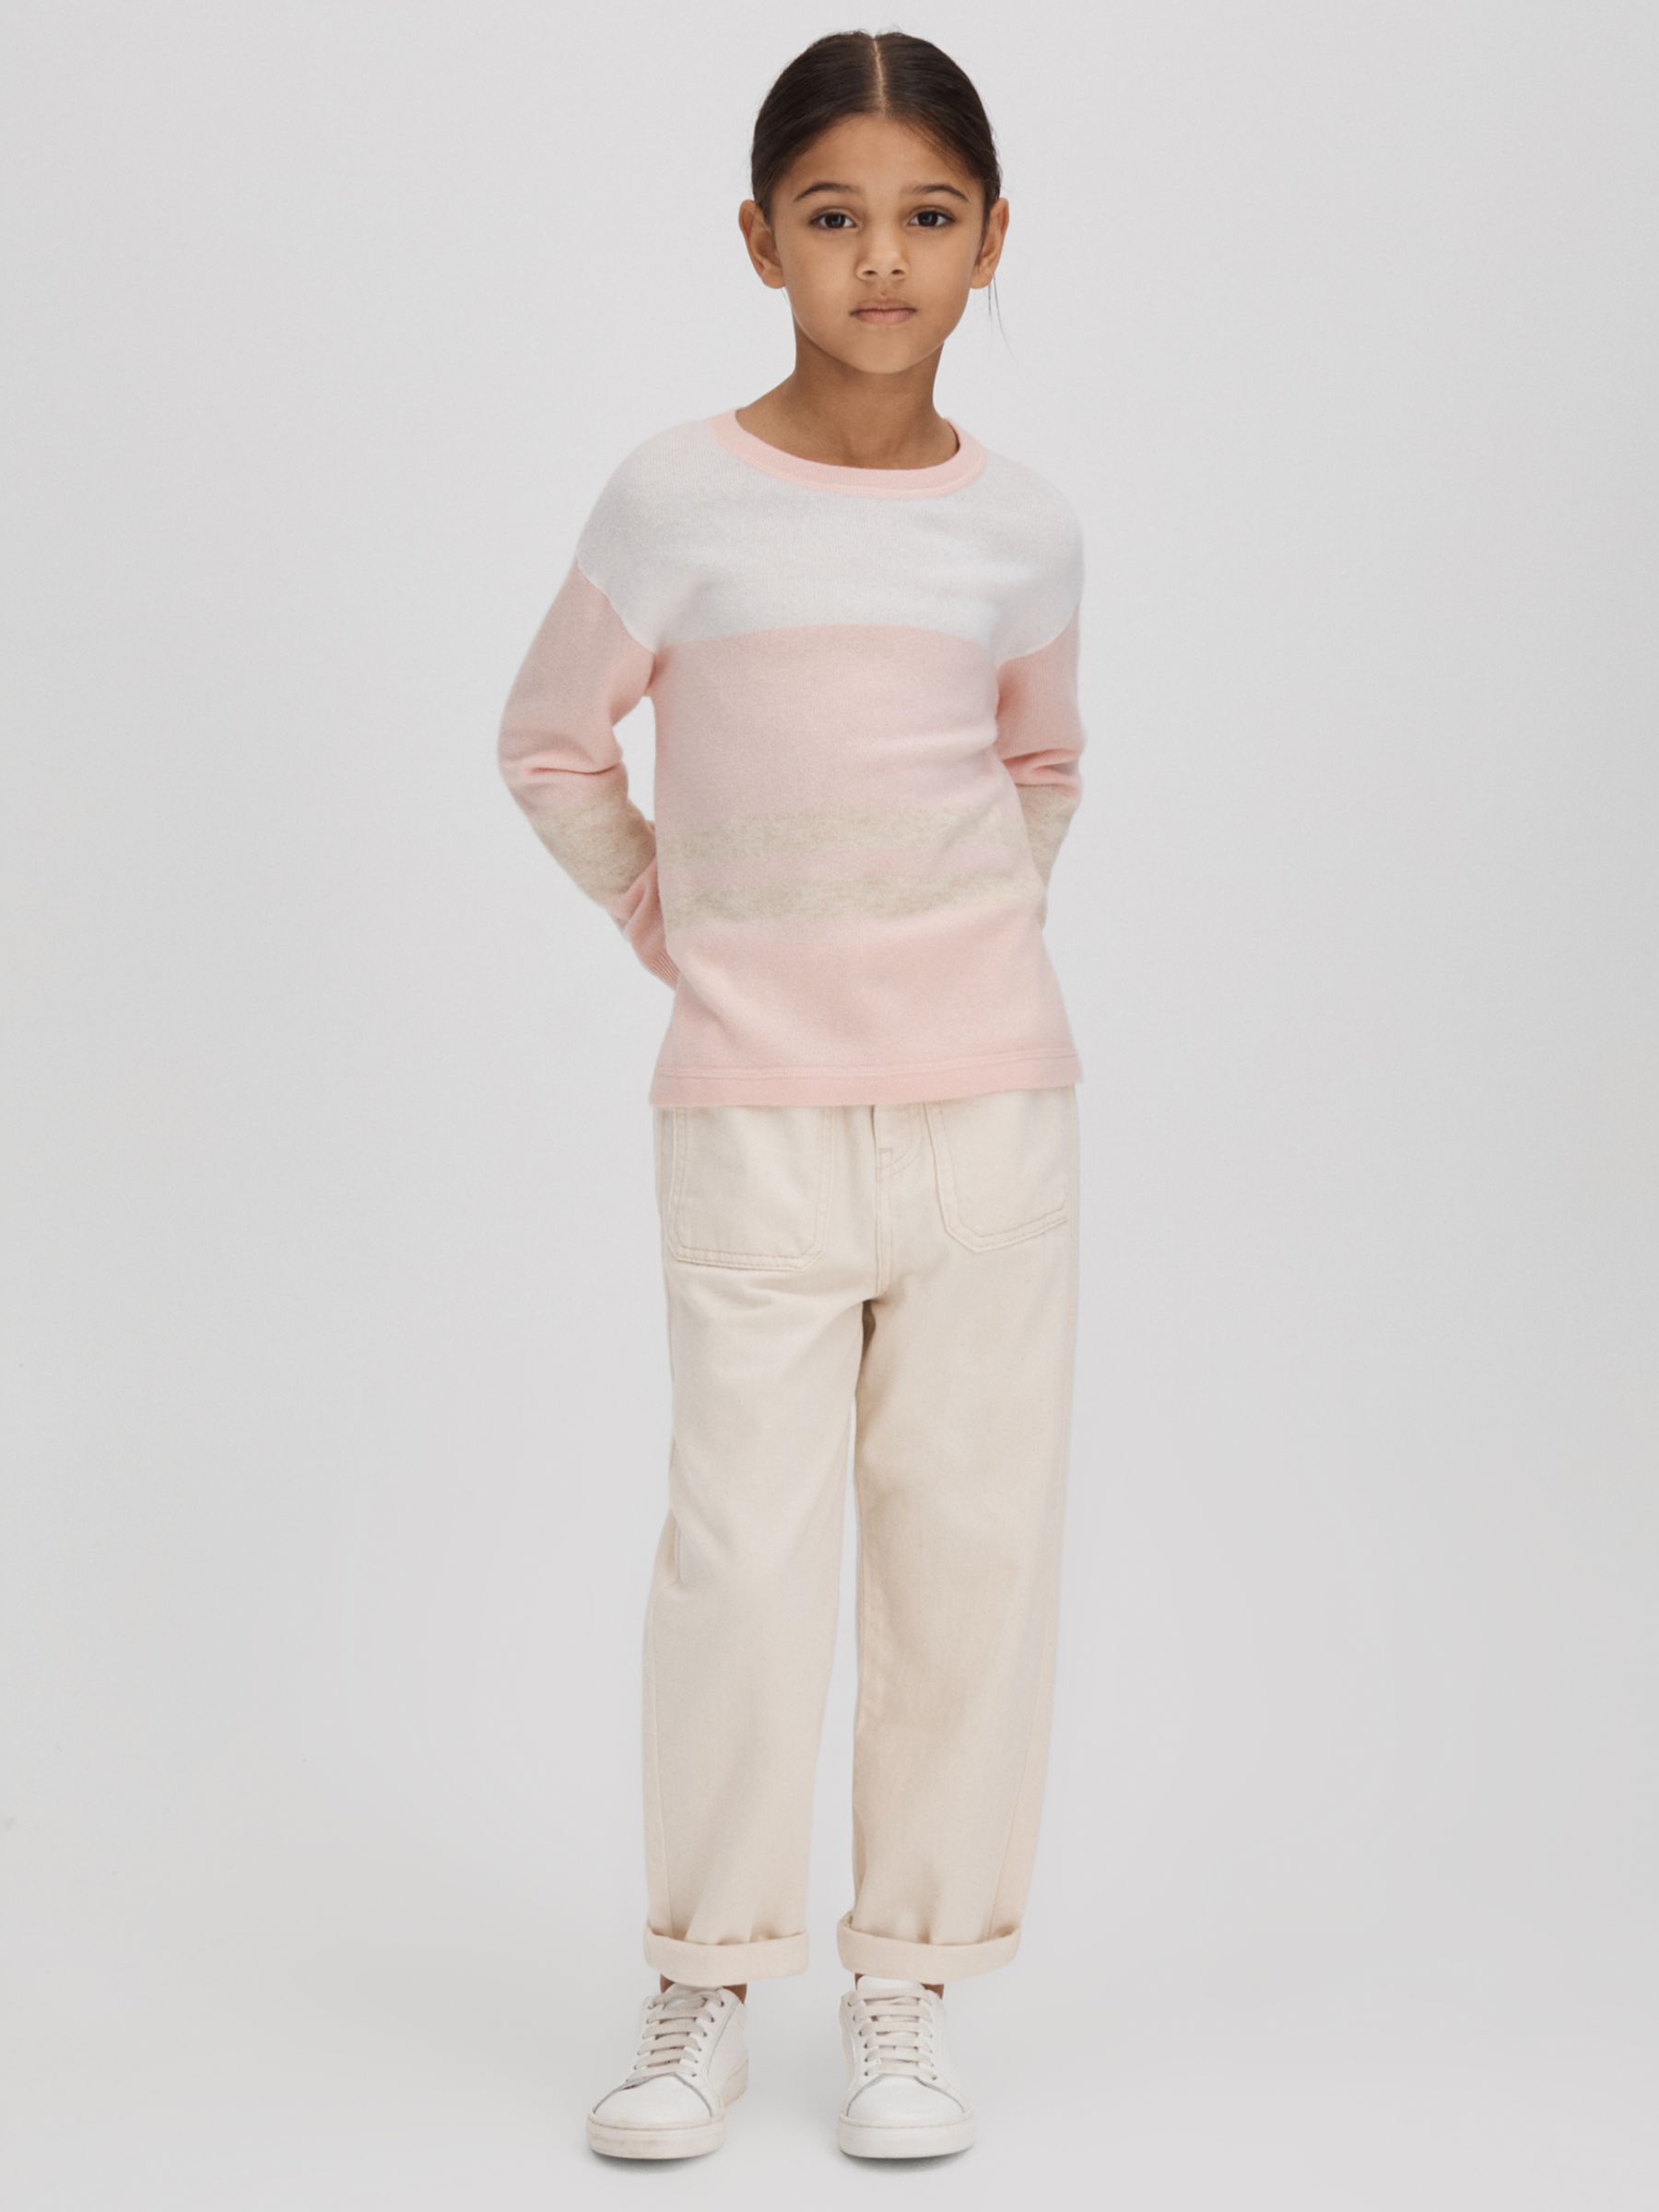 Reiss Kids' Allegra Stripe Knit Jumper, Pink, 4-5 years